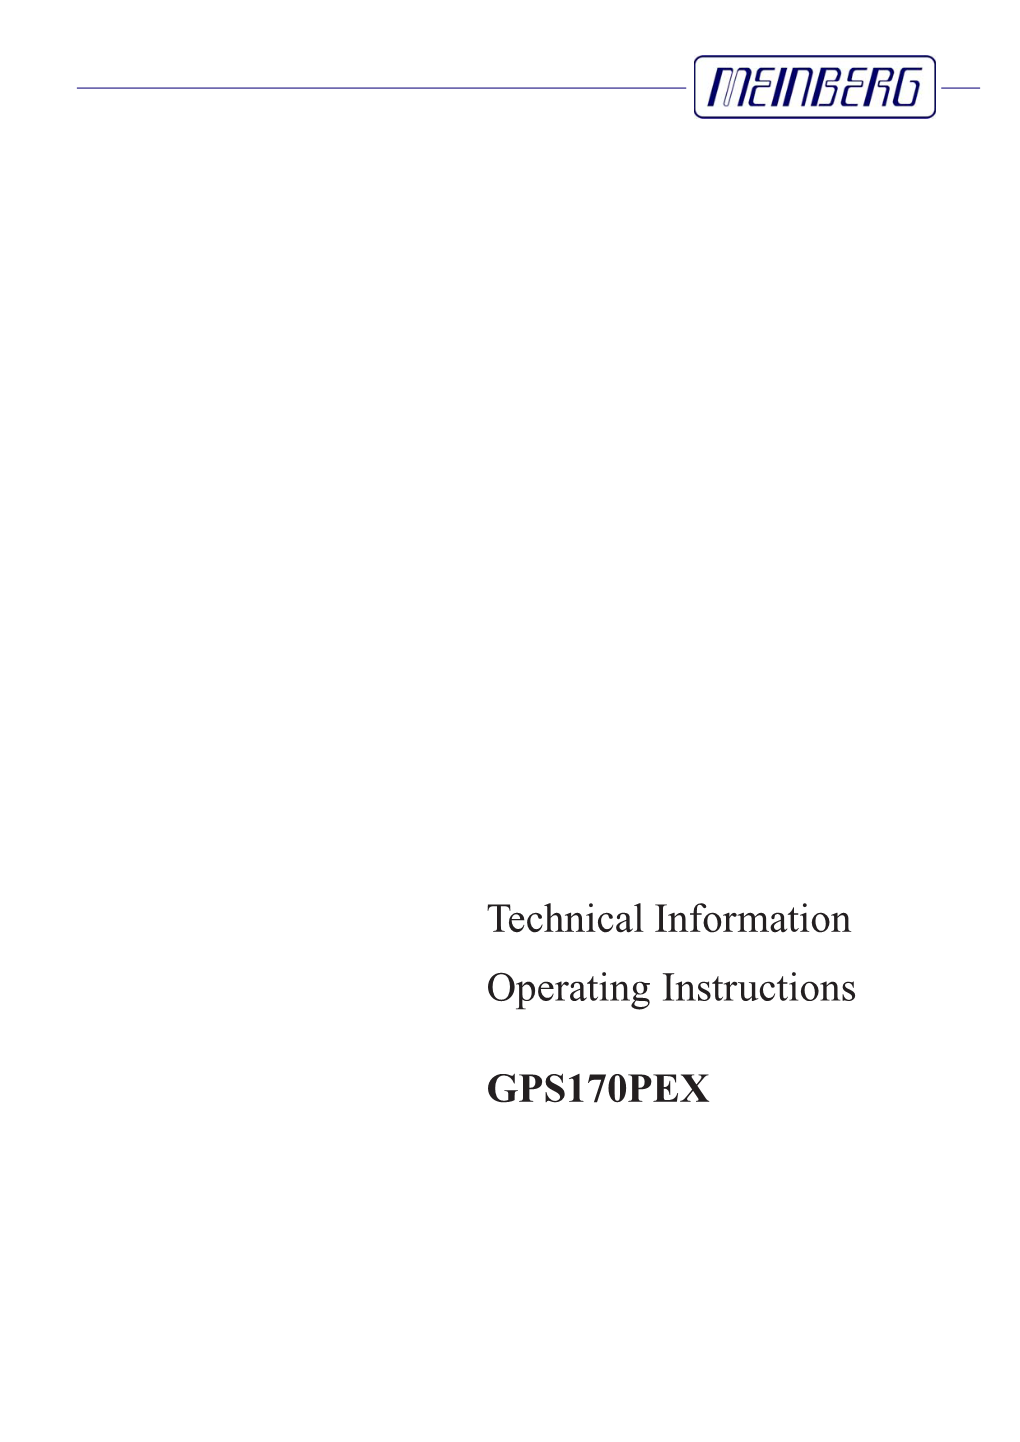 GPS170PEX User Manual